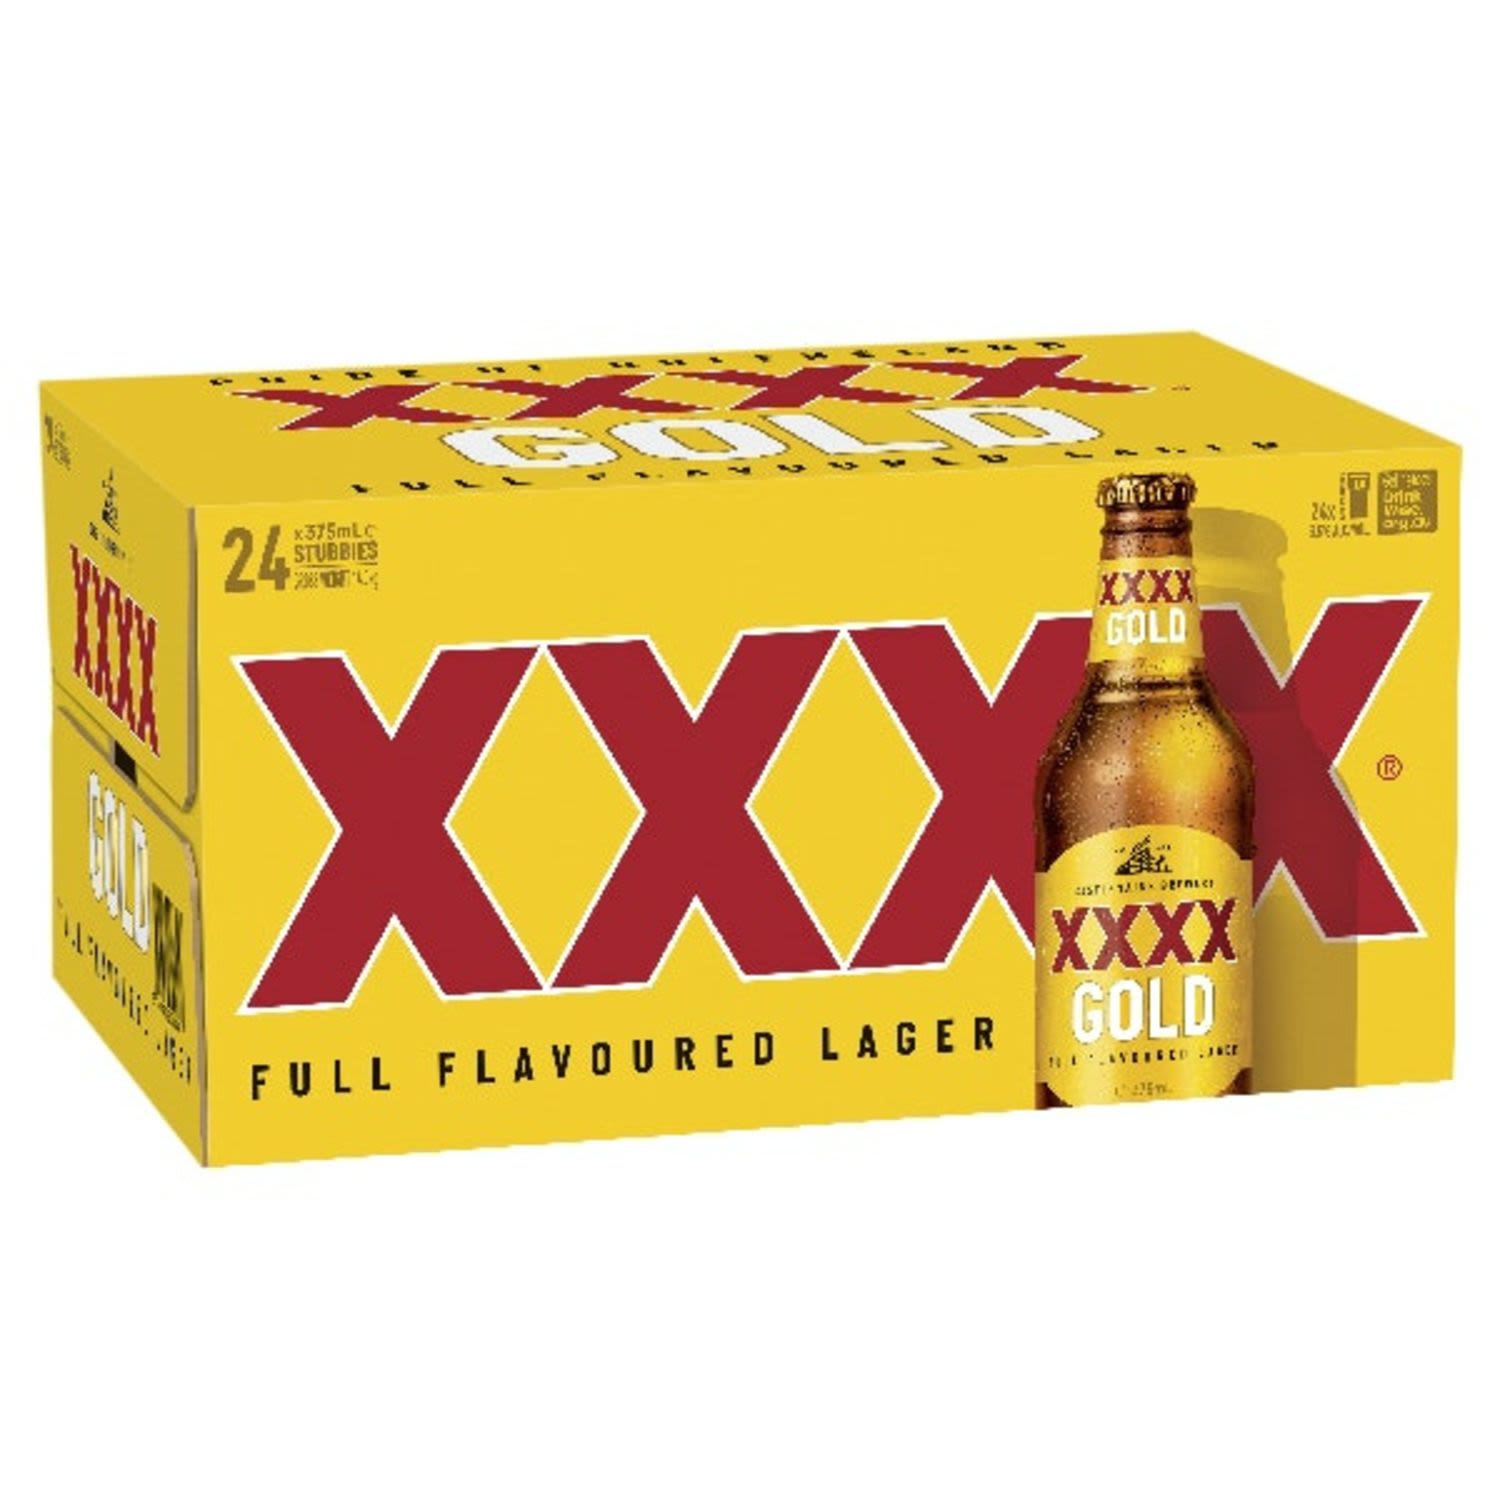 XXXX Gold Bottle 375mL 24 Pack